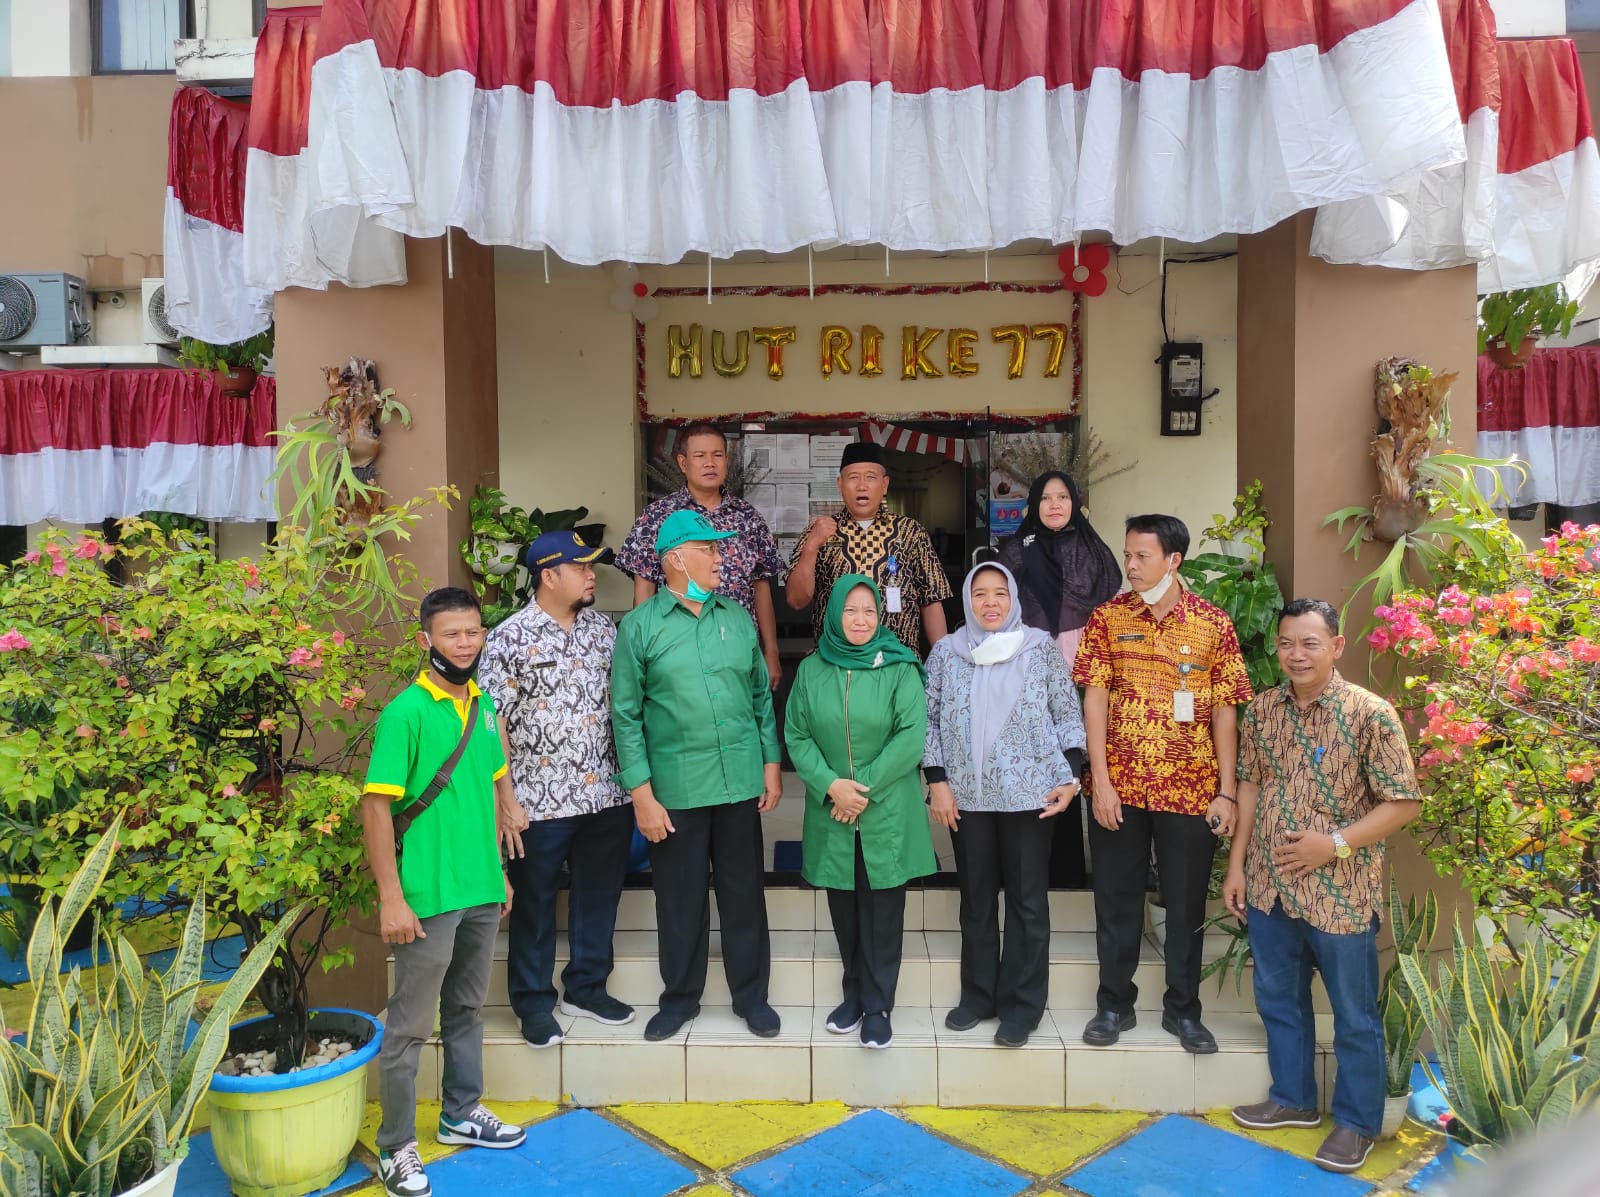 Penilaian FKTS kelurahan Neroktog oleh Team penilai FKTS Kota Tangerang.